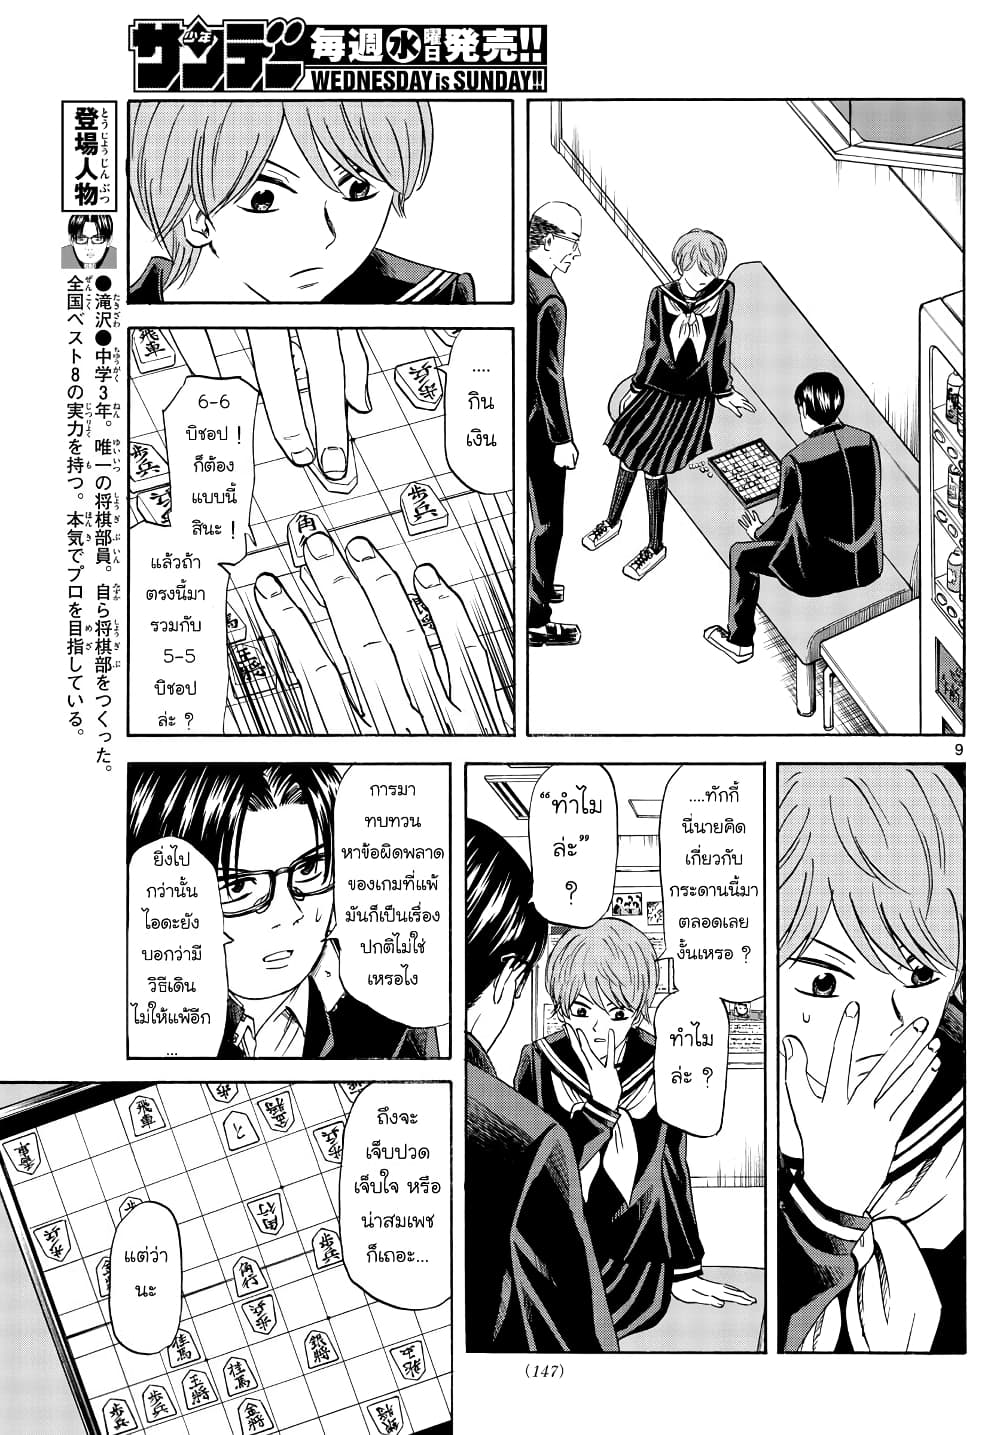 Ryuu to Ichigo 16-ทิฐิของผู้ชาย